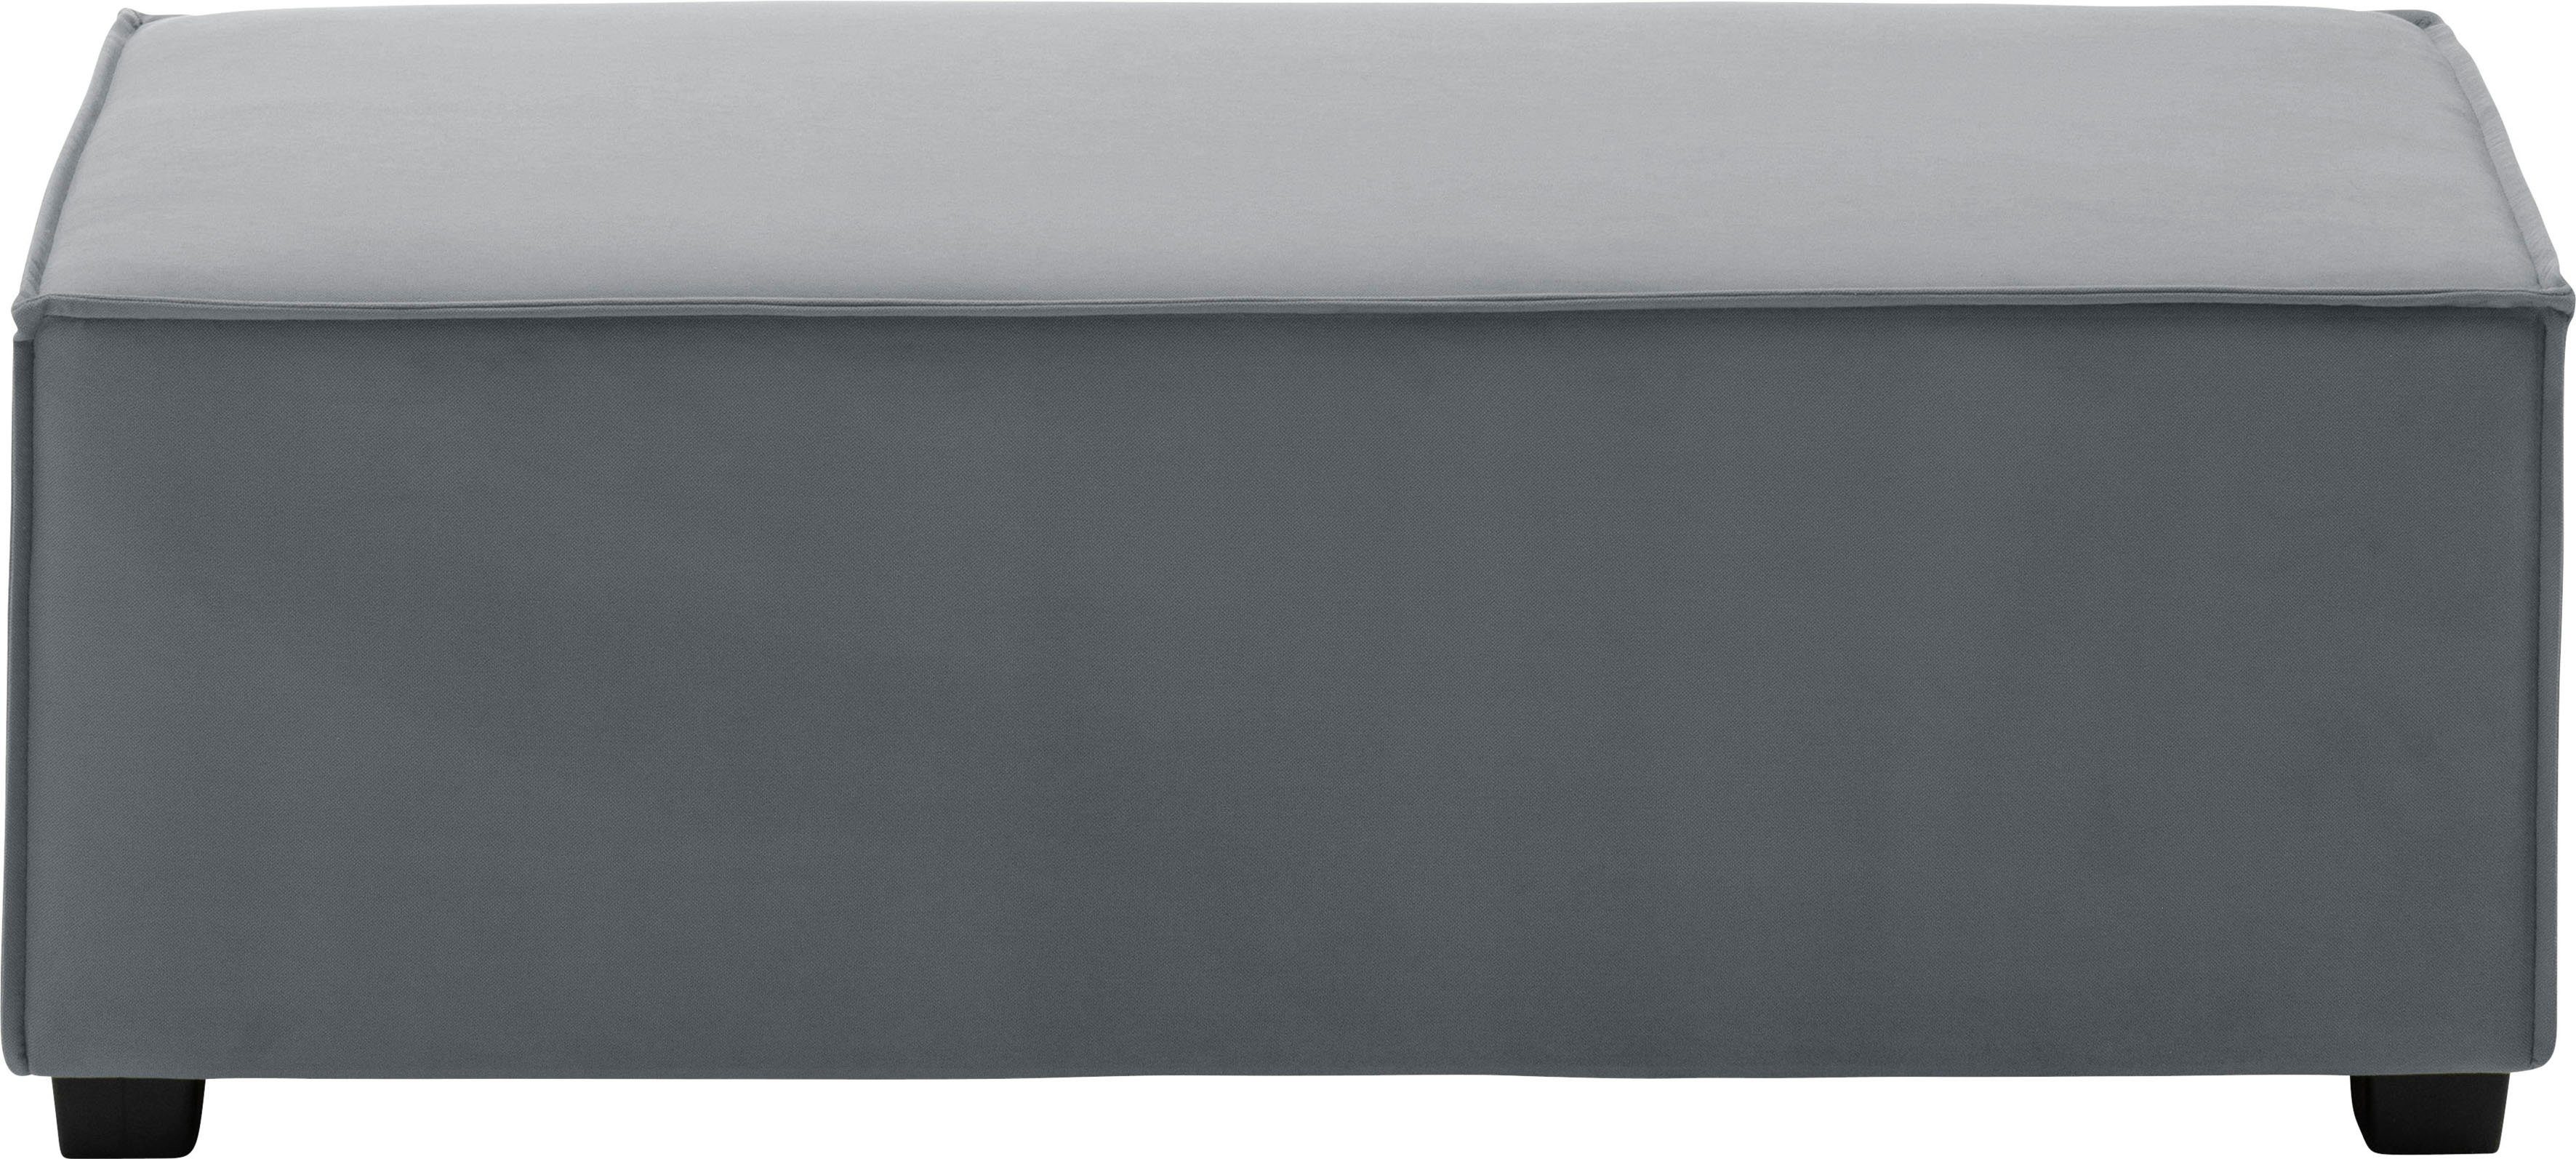 Max Winzer® Einzelelement kombinierbar grau MOVE, Sofaelement individuell 120/60/42 cm